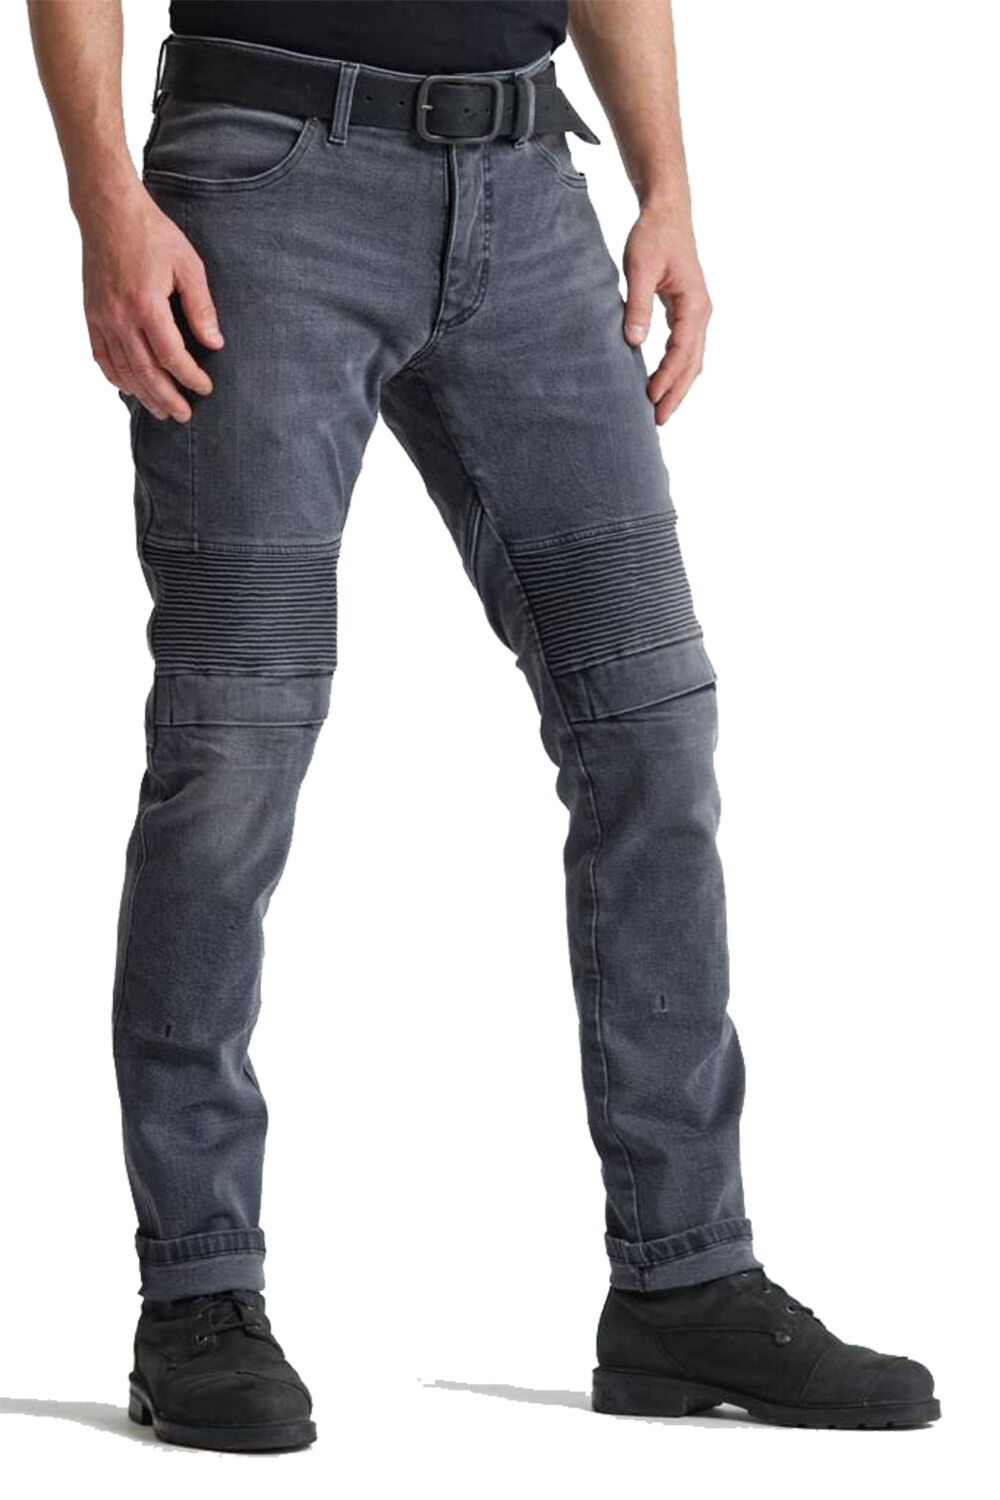 Furious Pro Denim Jeans Pants